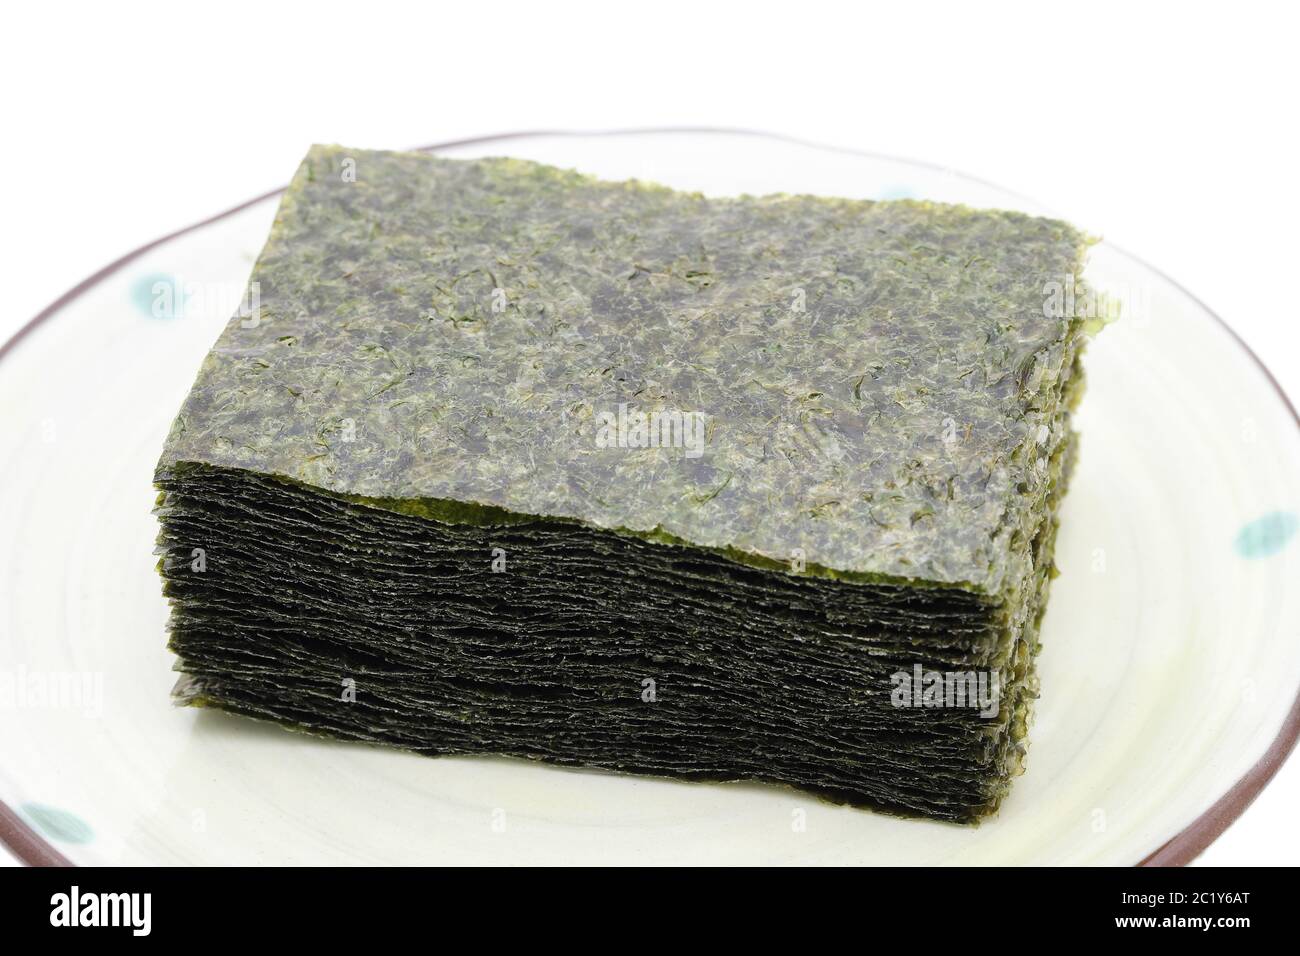 Japanisches Essen, Stapel von trockenen Nori-Algenblättern auf dem Teller Stockfoto